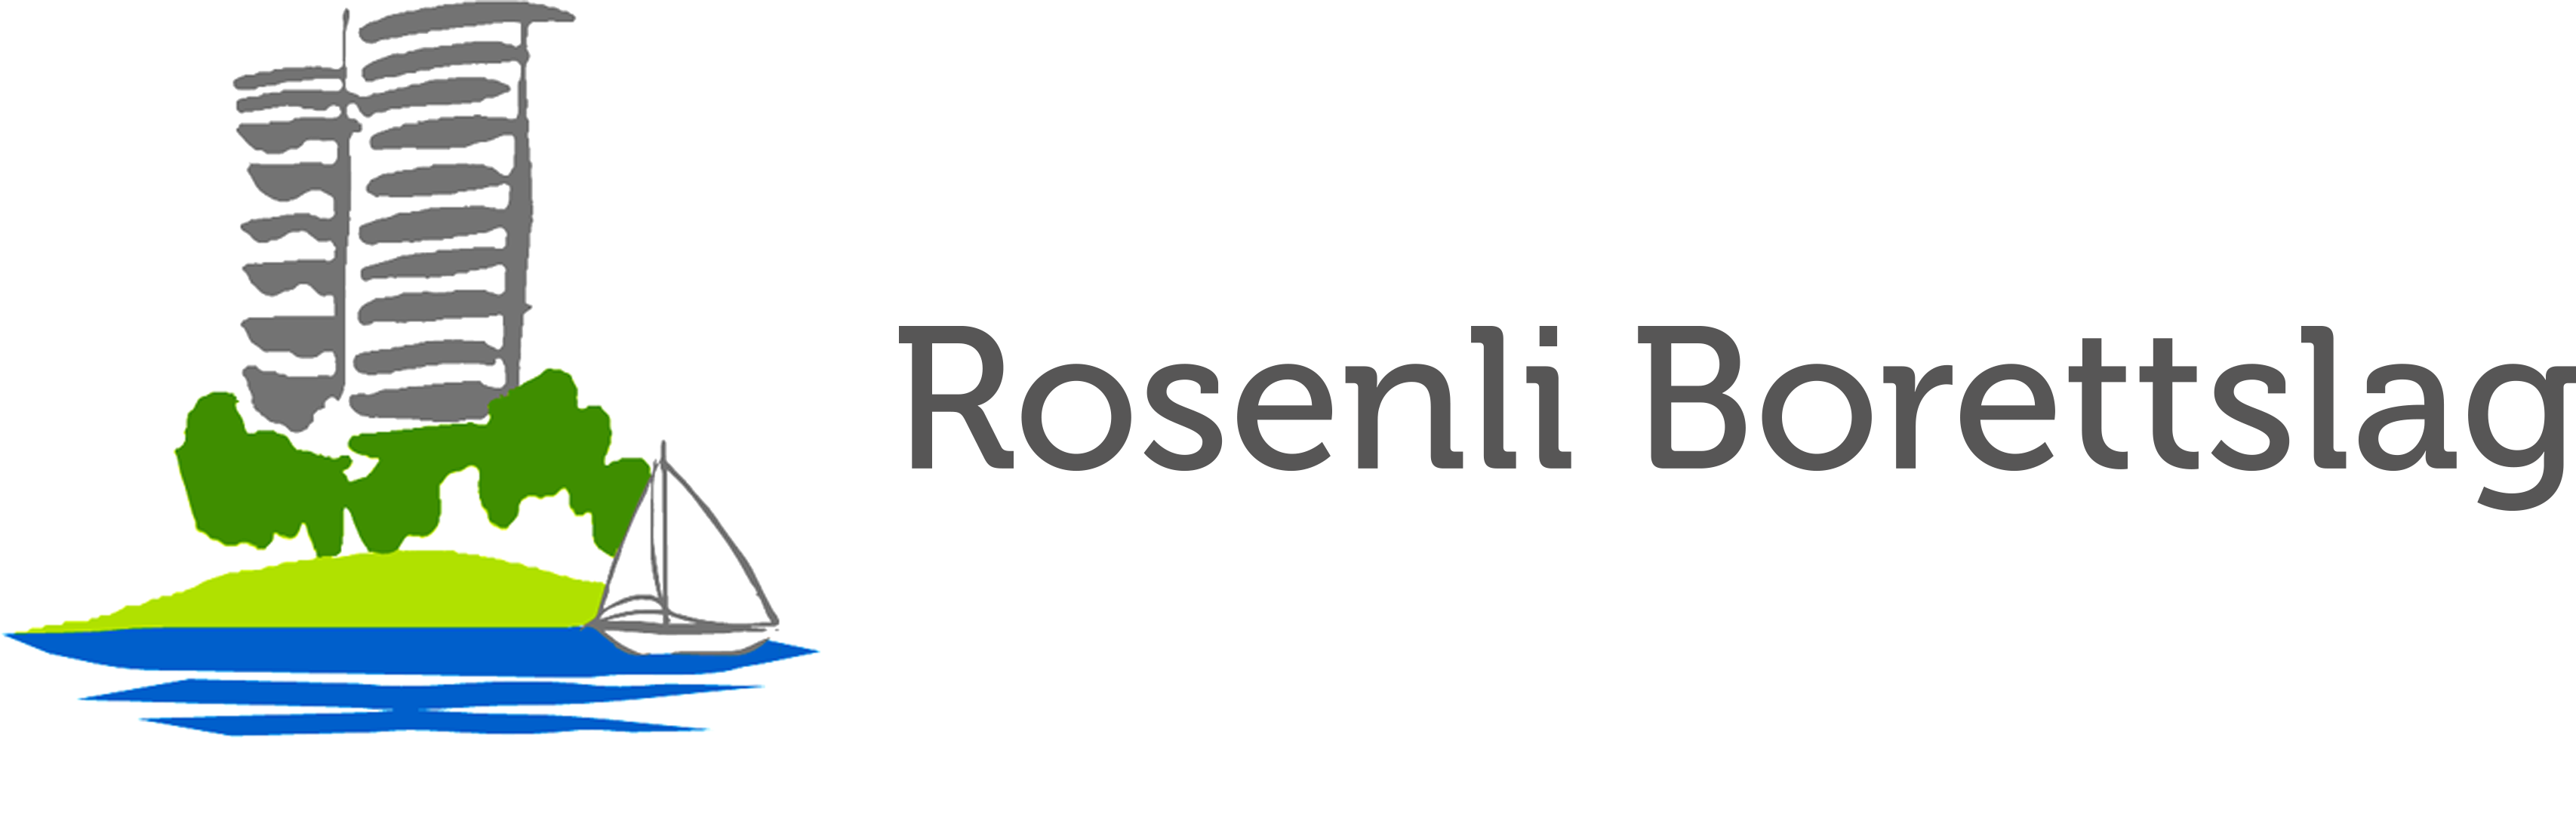 Logo: Rosenli Borettslag.